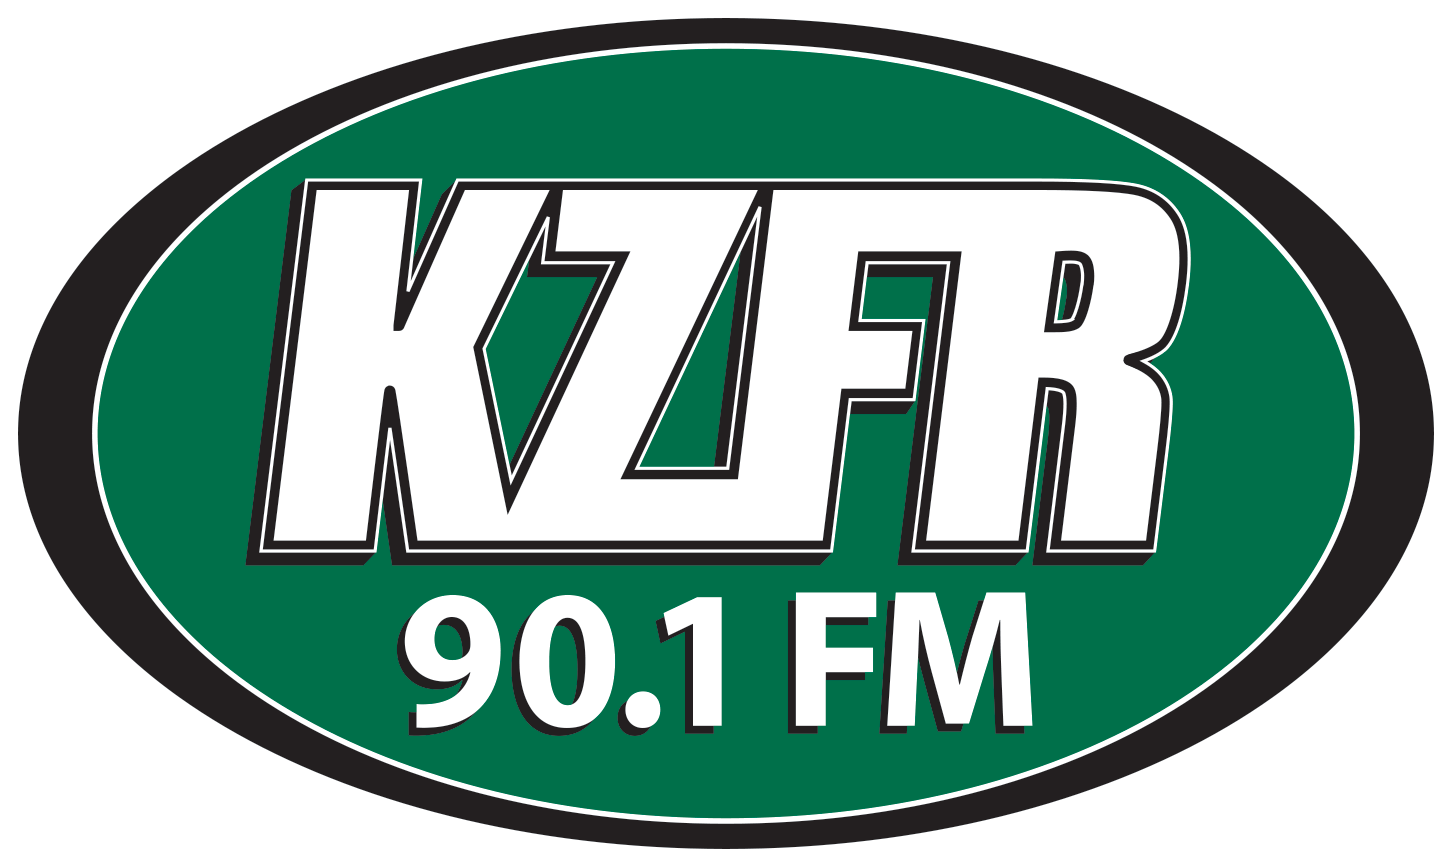 KZFR 90.1 FM